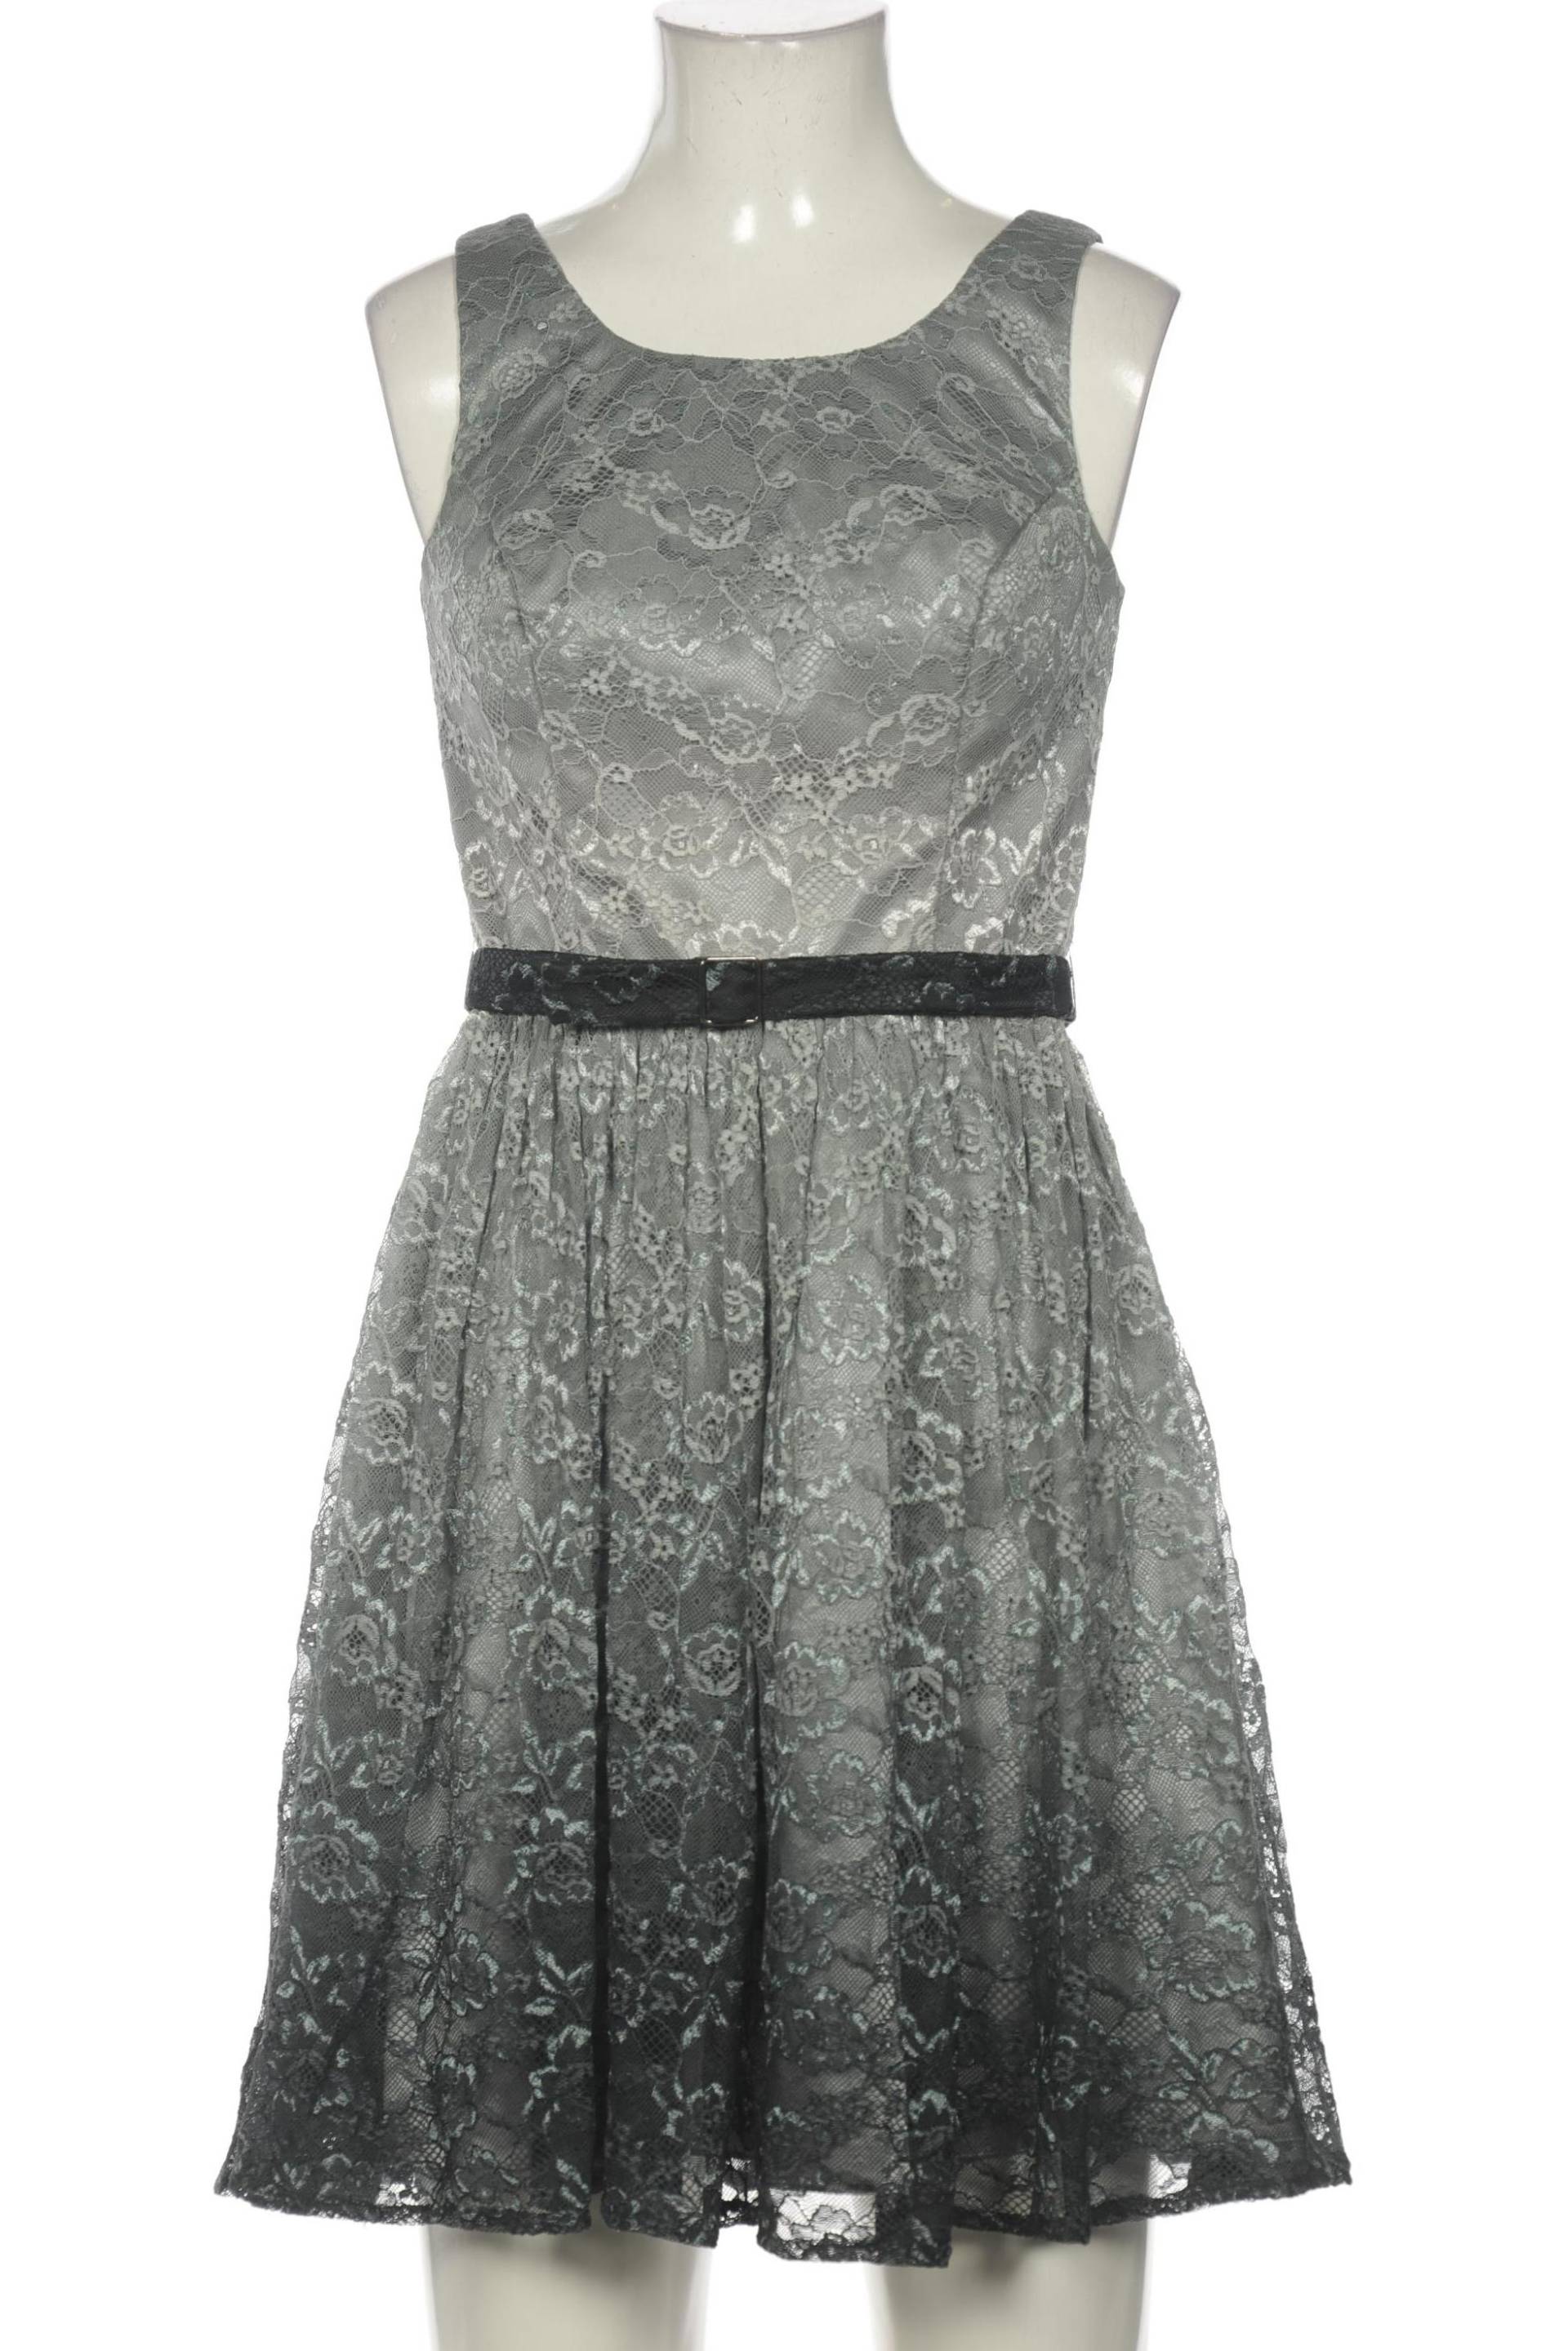 Laona Damen Kleid, grau, Gr. 34 von LAONA